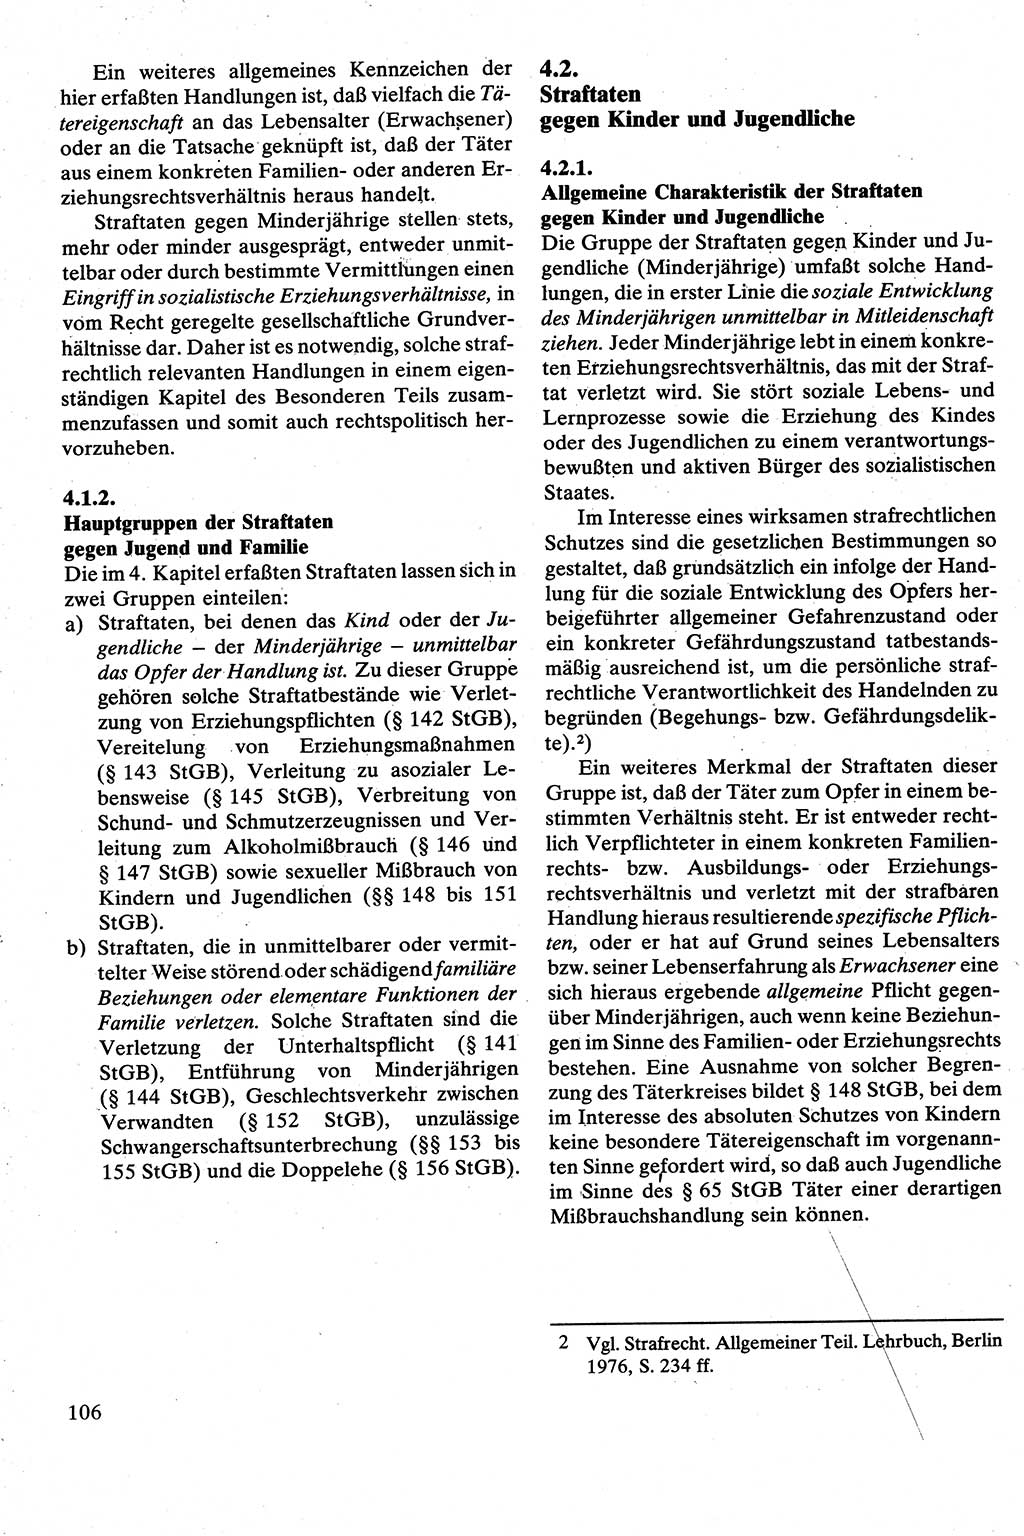 Strafrecht [Deutsche Demokratische Republik (DDR)], Besonderer Teil, Lehrbuch 1981, Seite 106 (Strafr. DDR BT Lb. 1981, S. 106)